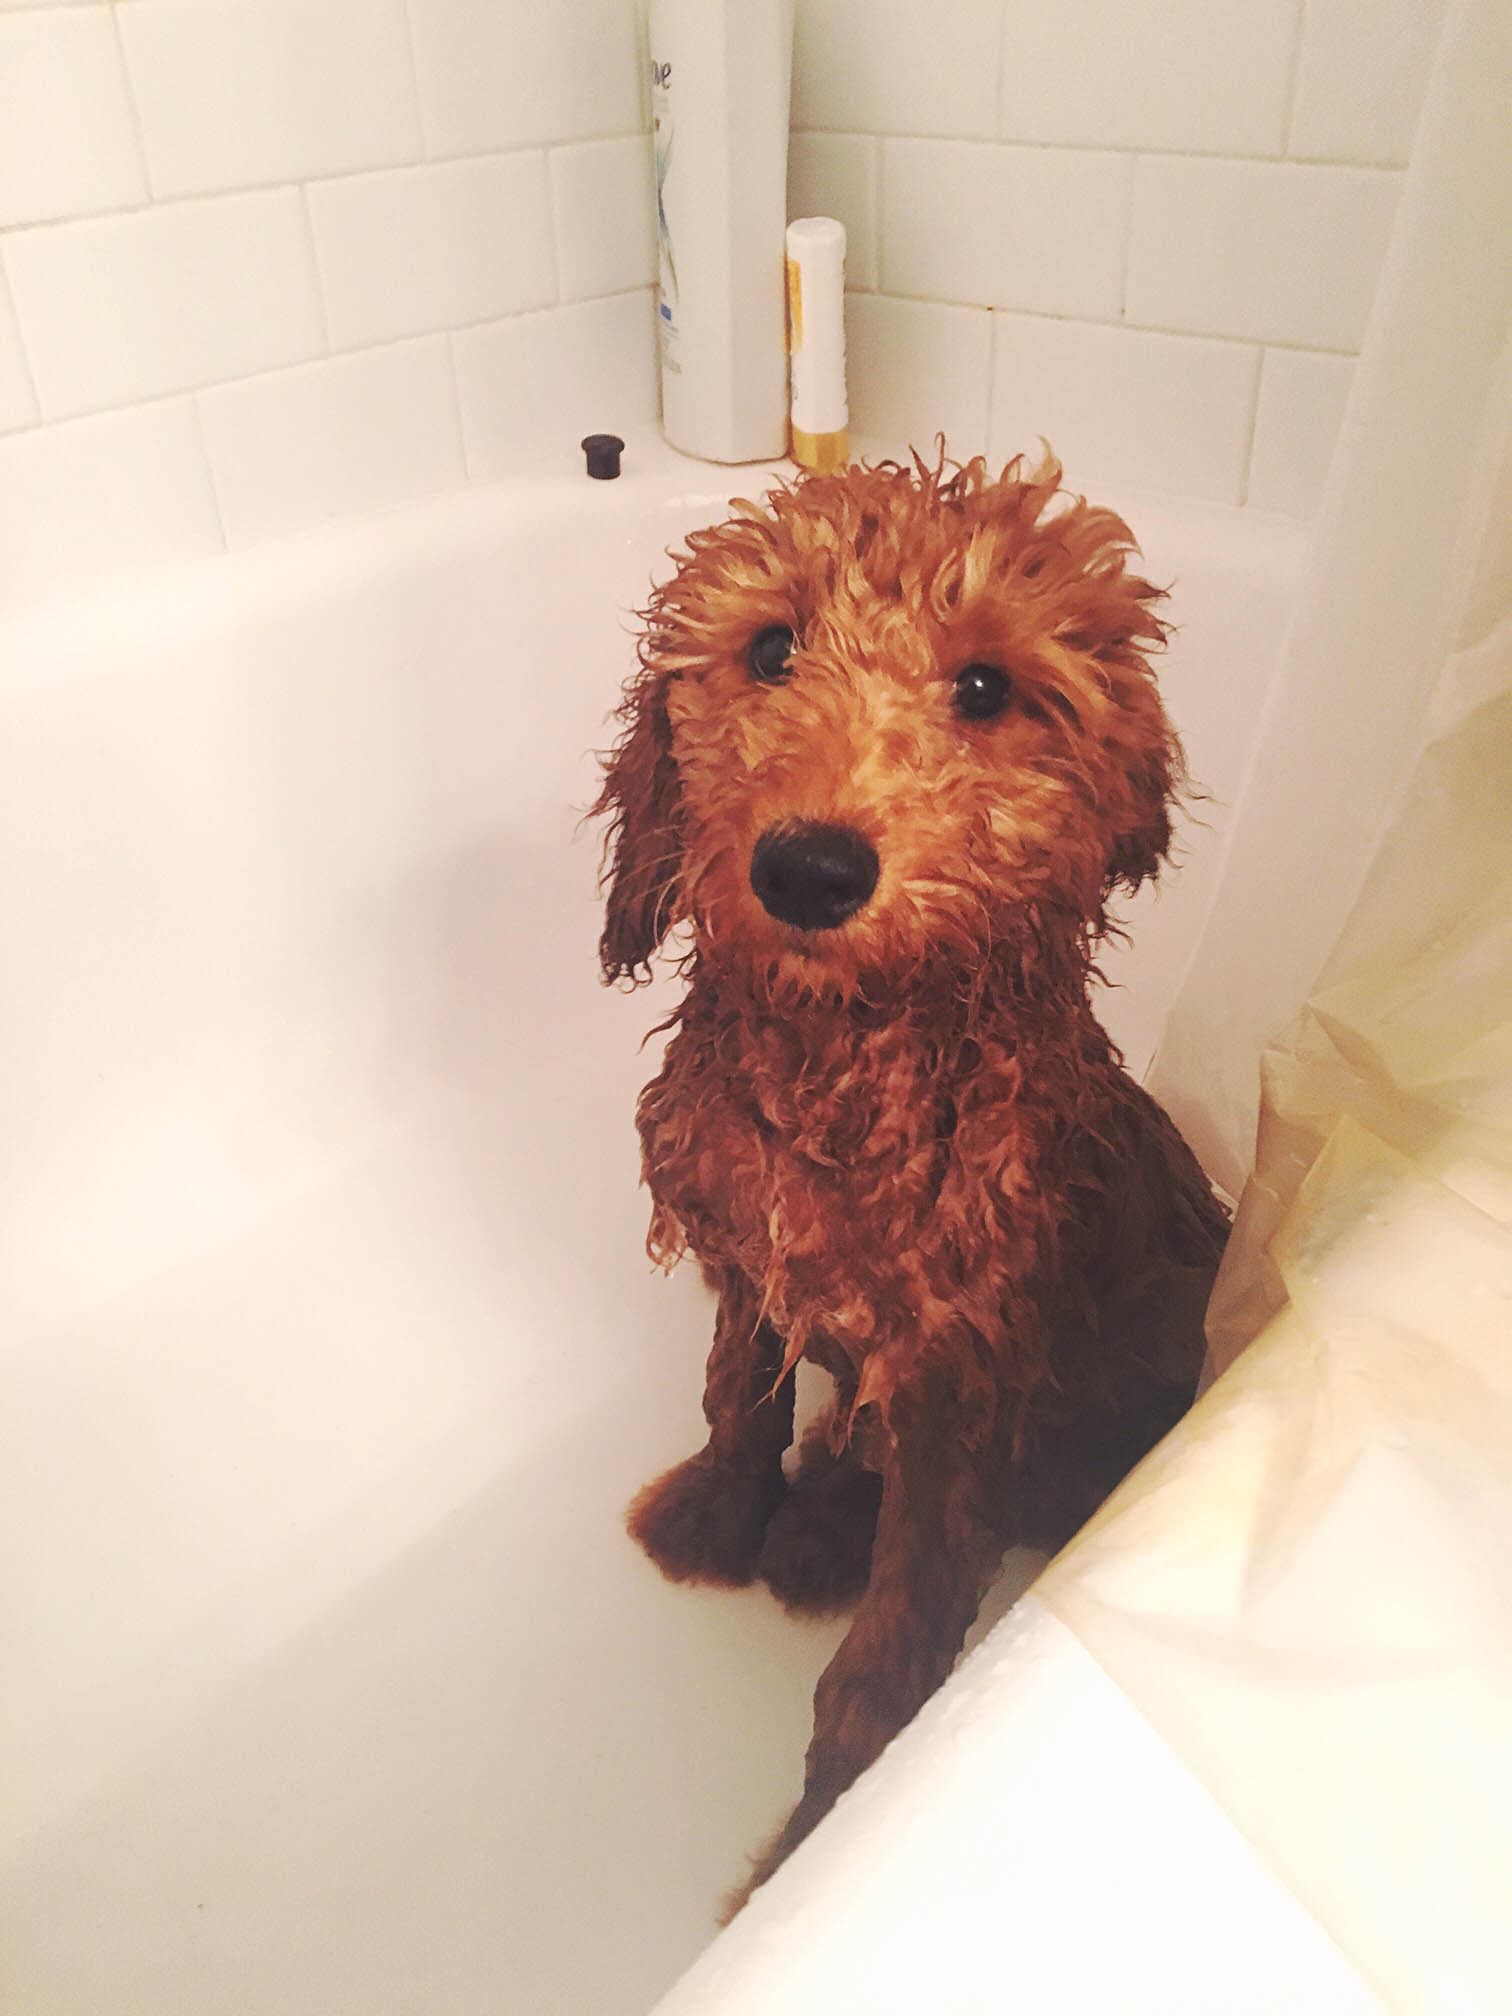 wet dog in a bathtub